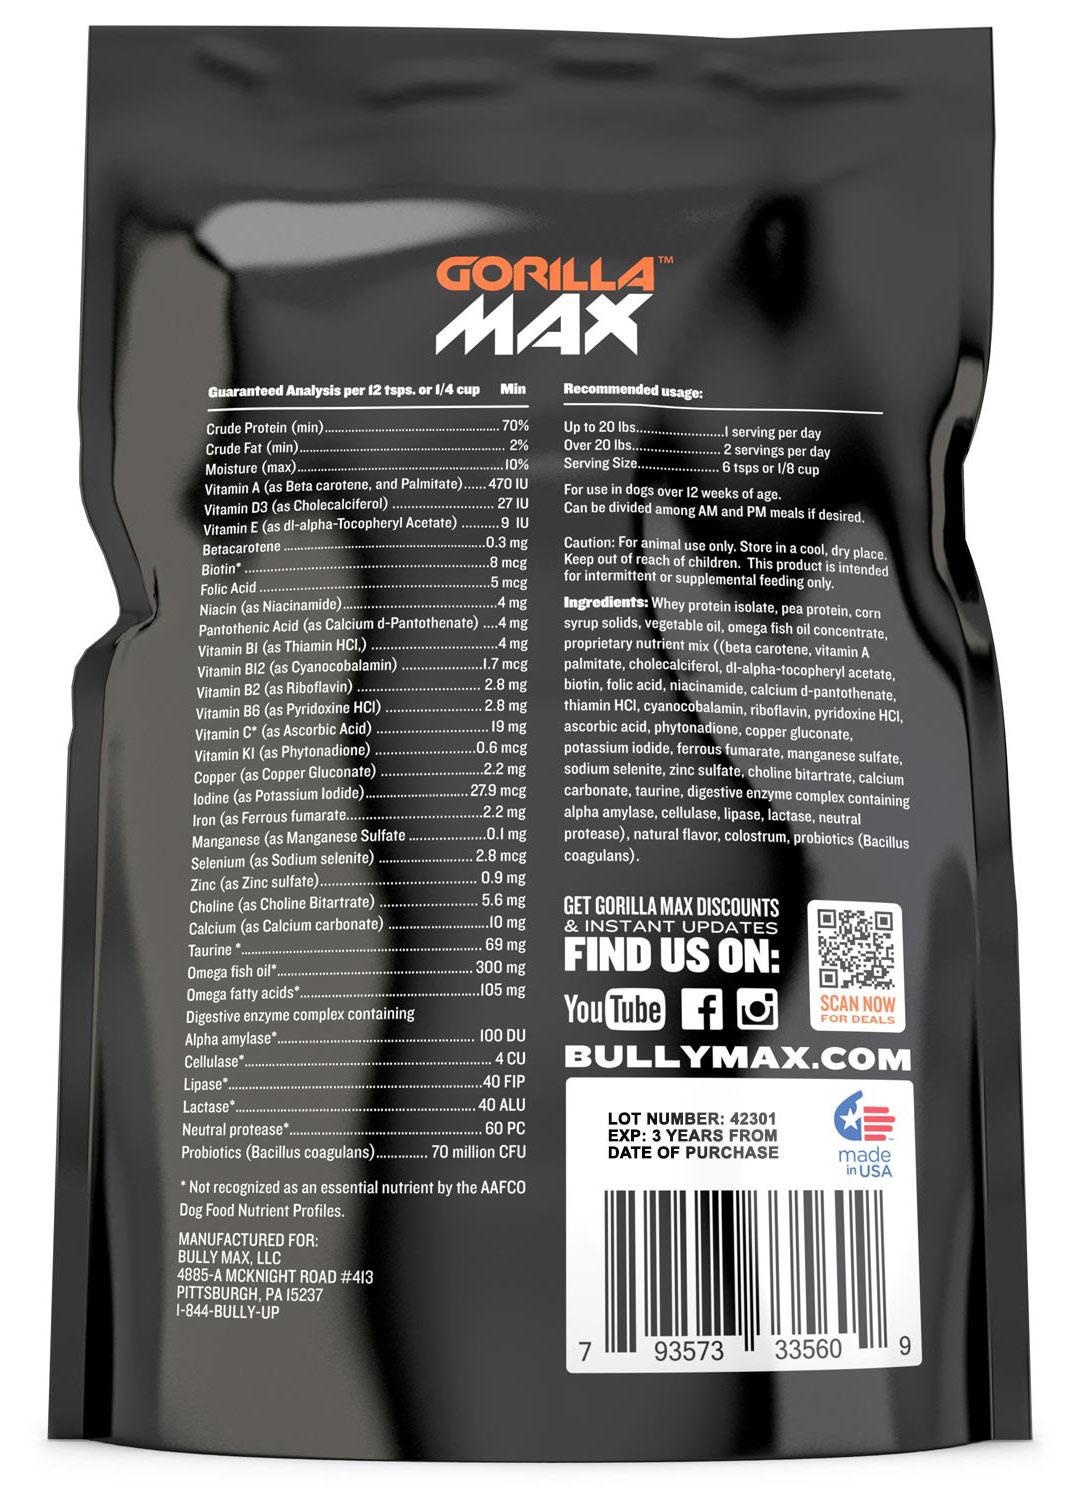 gorilla-max-ingredients-bag.jpg